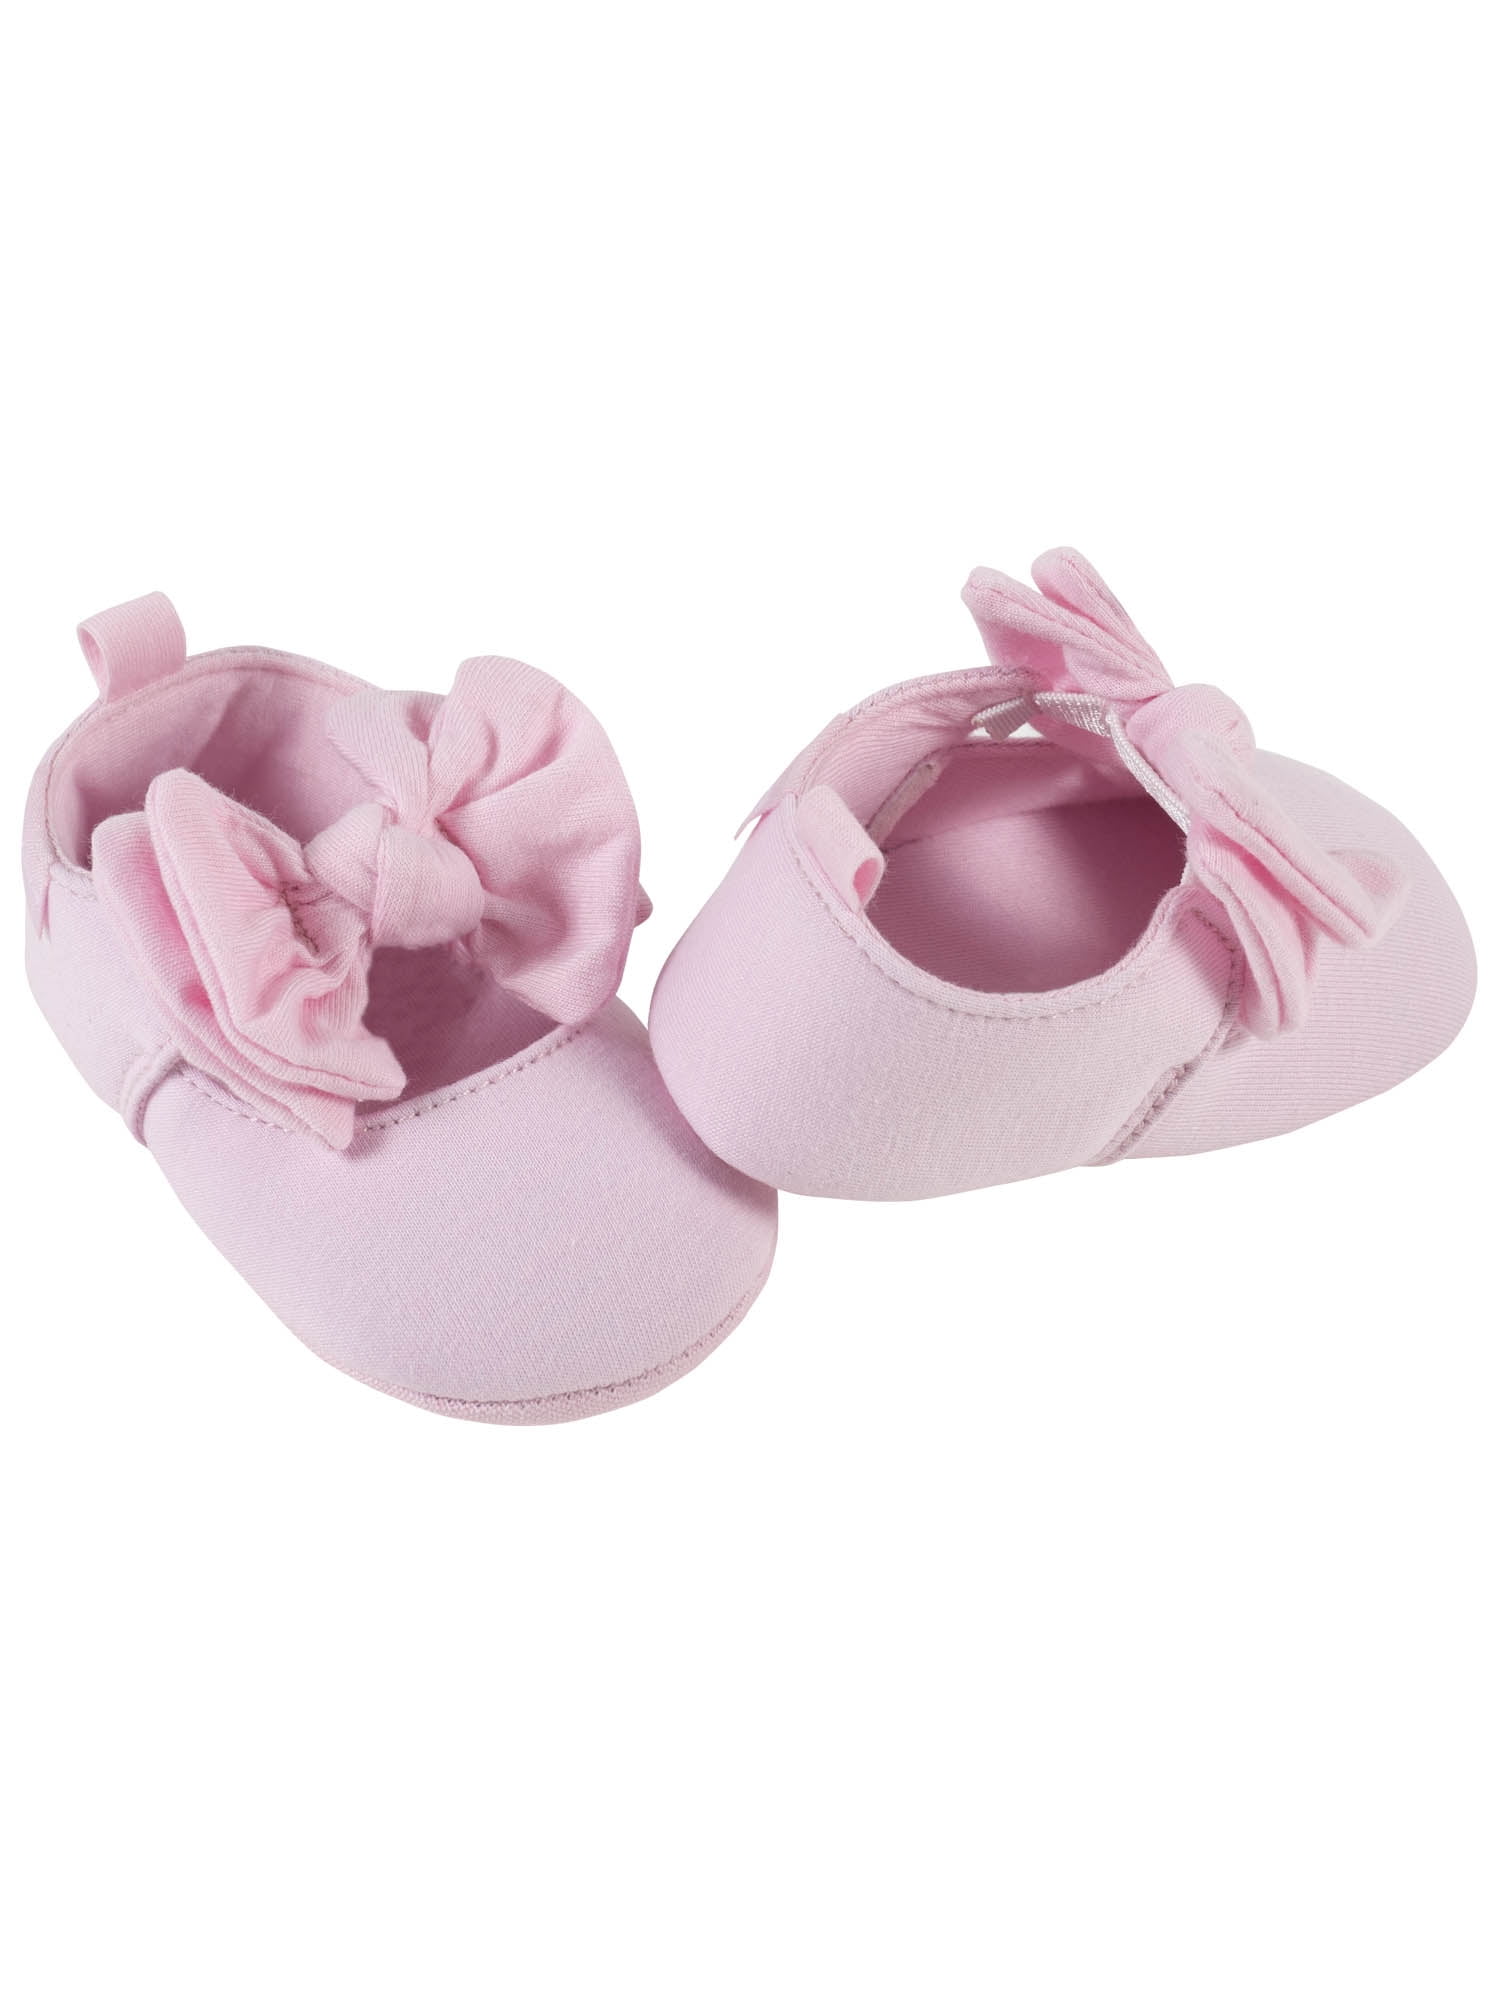 Baby Girl Metalic Pink Pram Sandals sizes 0-3 3-6 & 6-9 months 